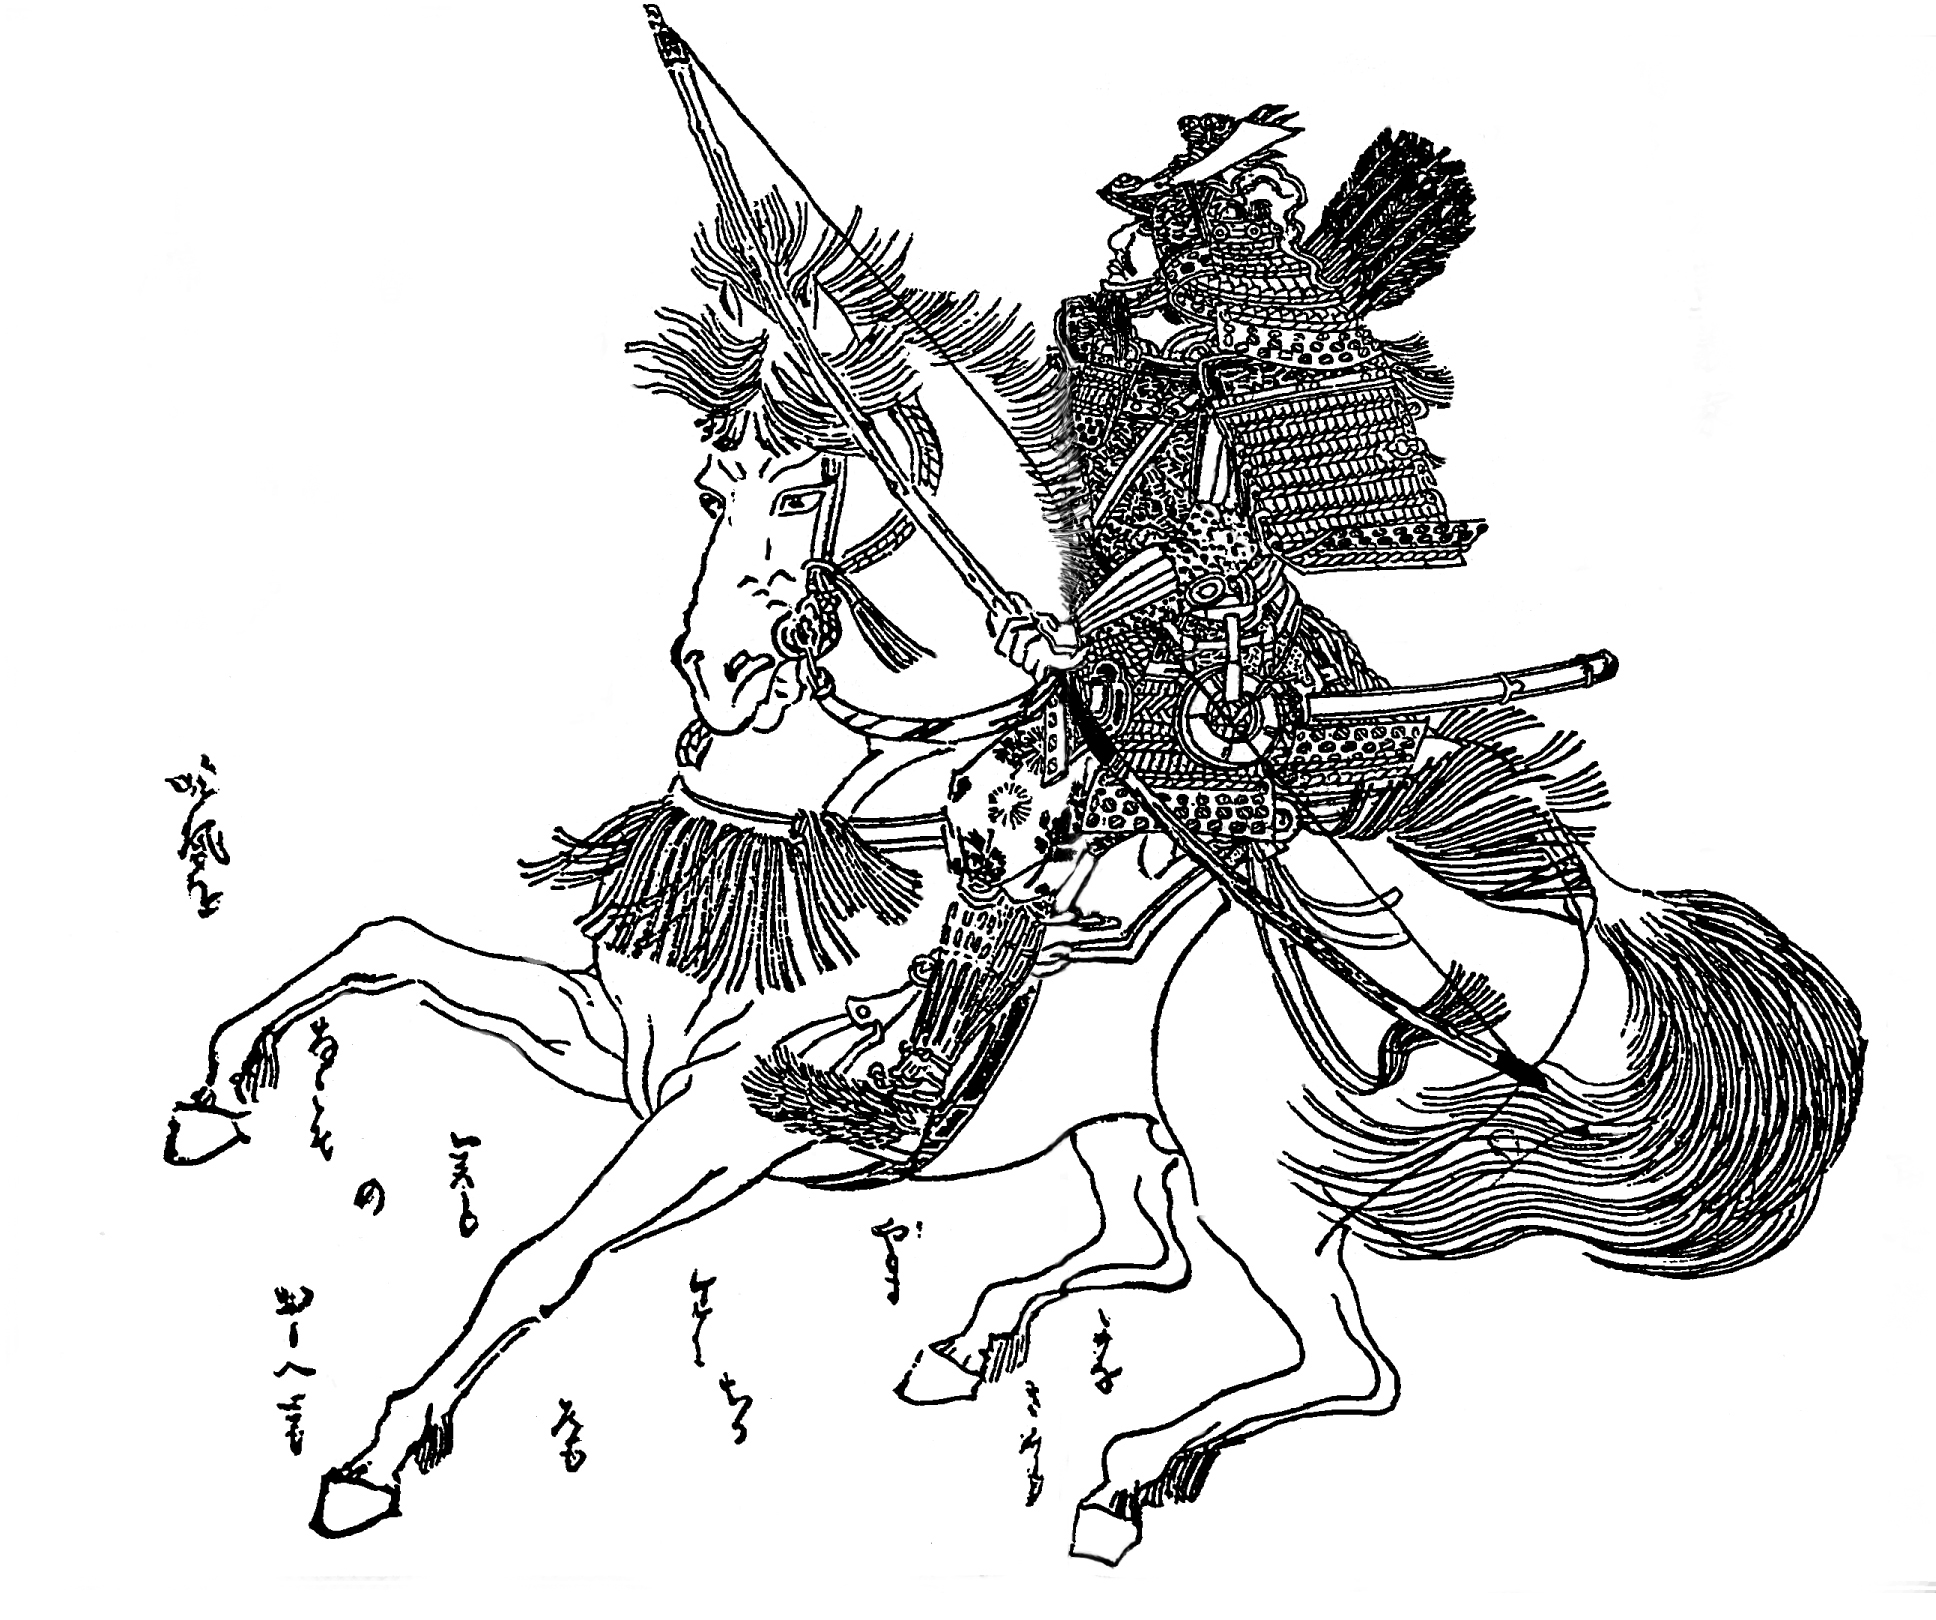 https://upload.wikimedia.org/wikipedia/commons/5/53/Minamoto_no_Yoshiie.jpg